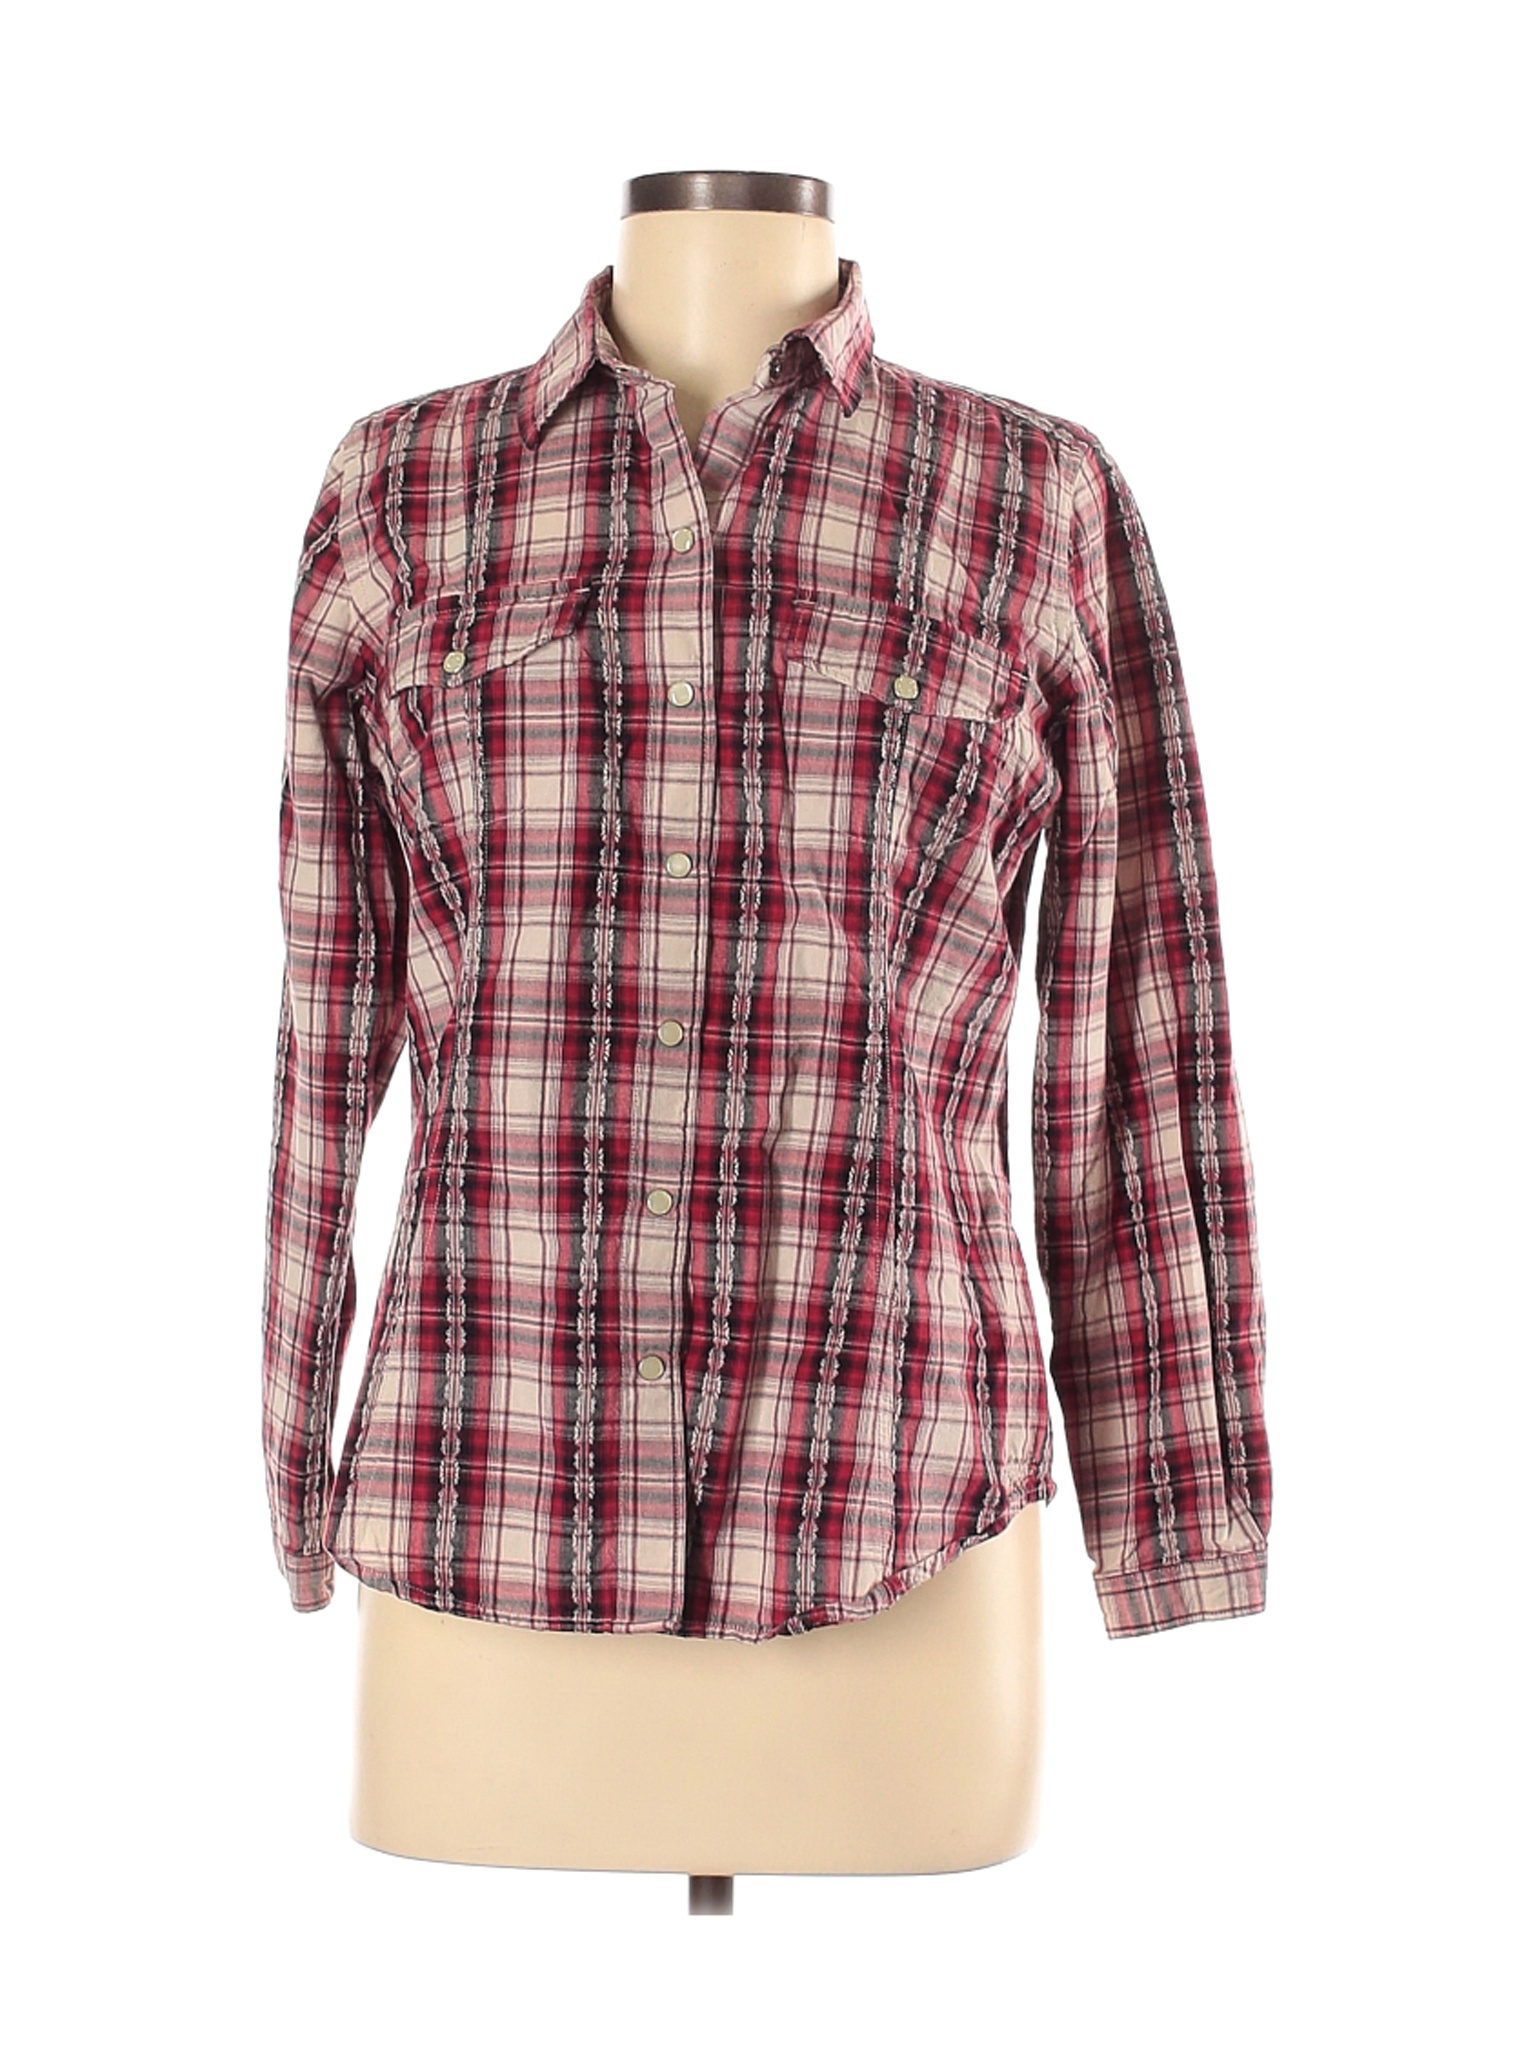 Woolrich Women Red Long Sleeve Button-Down Shirt M | eBay